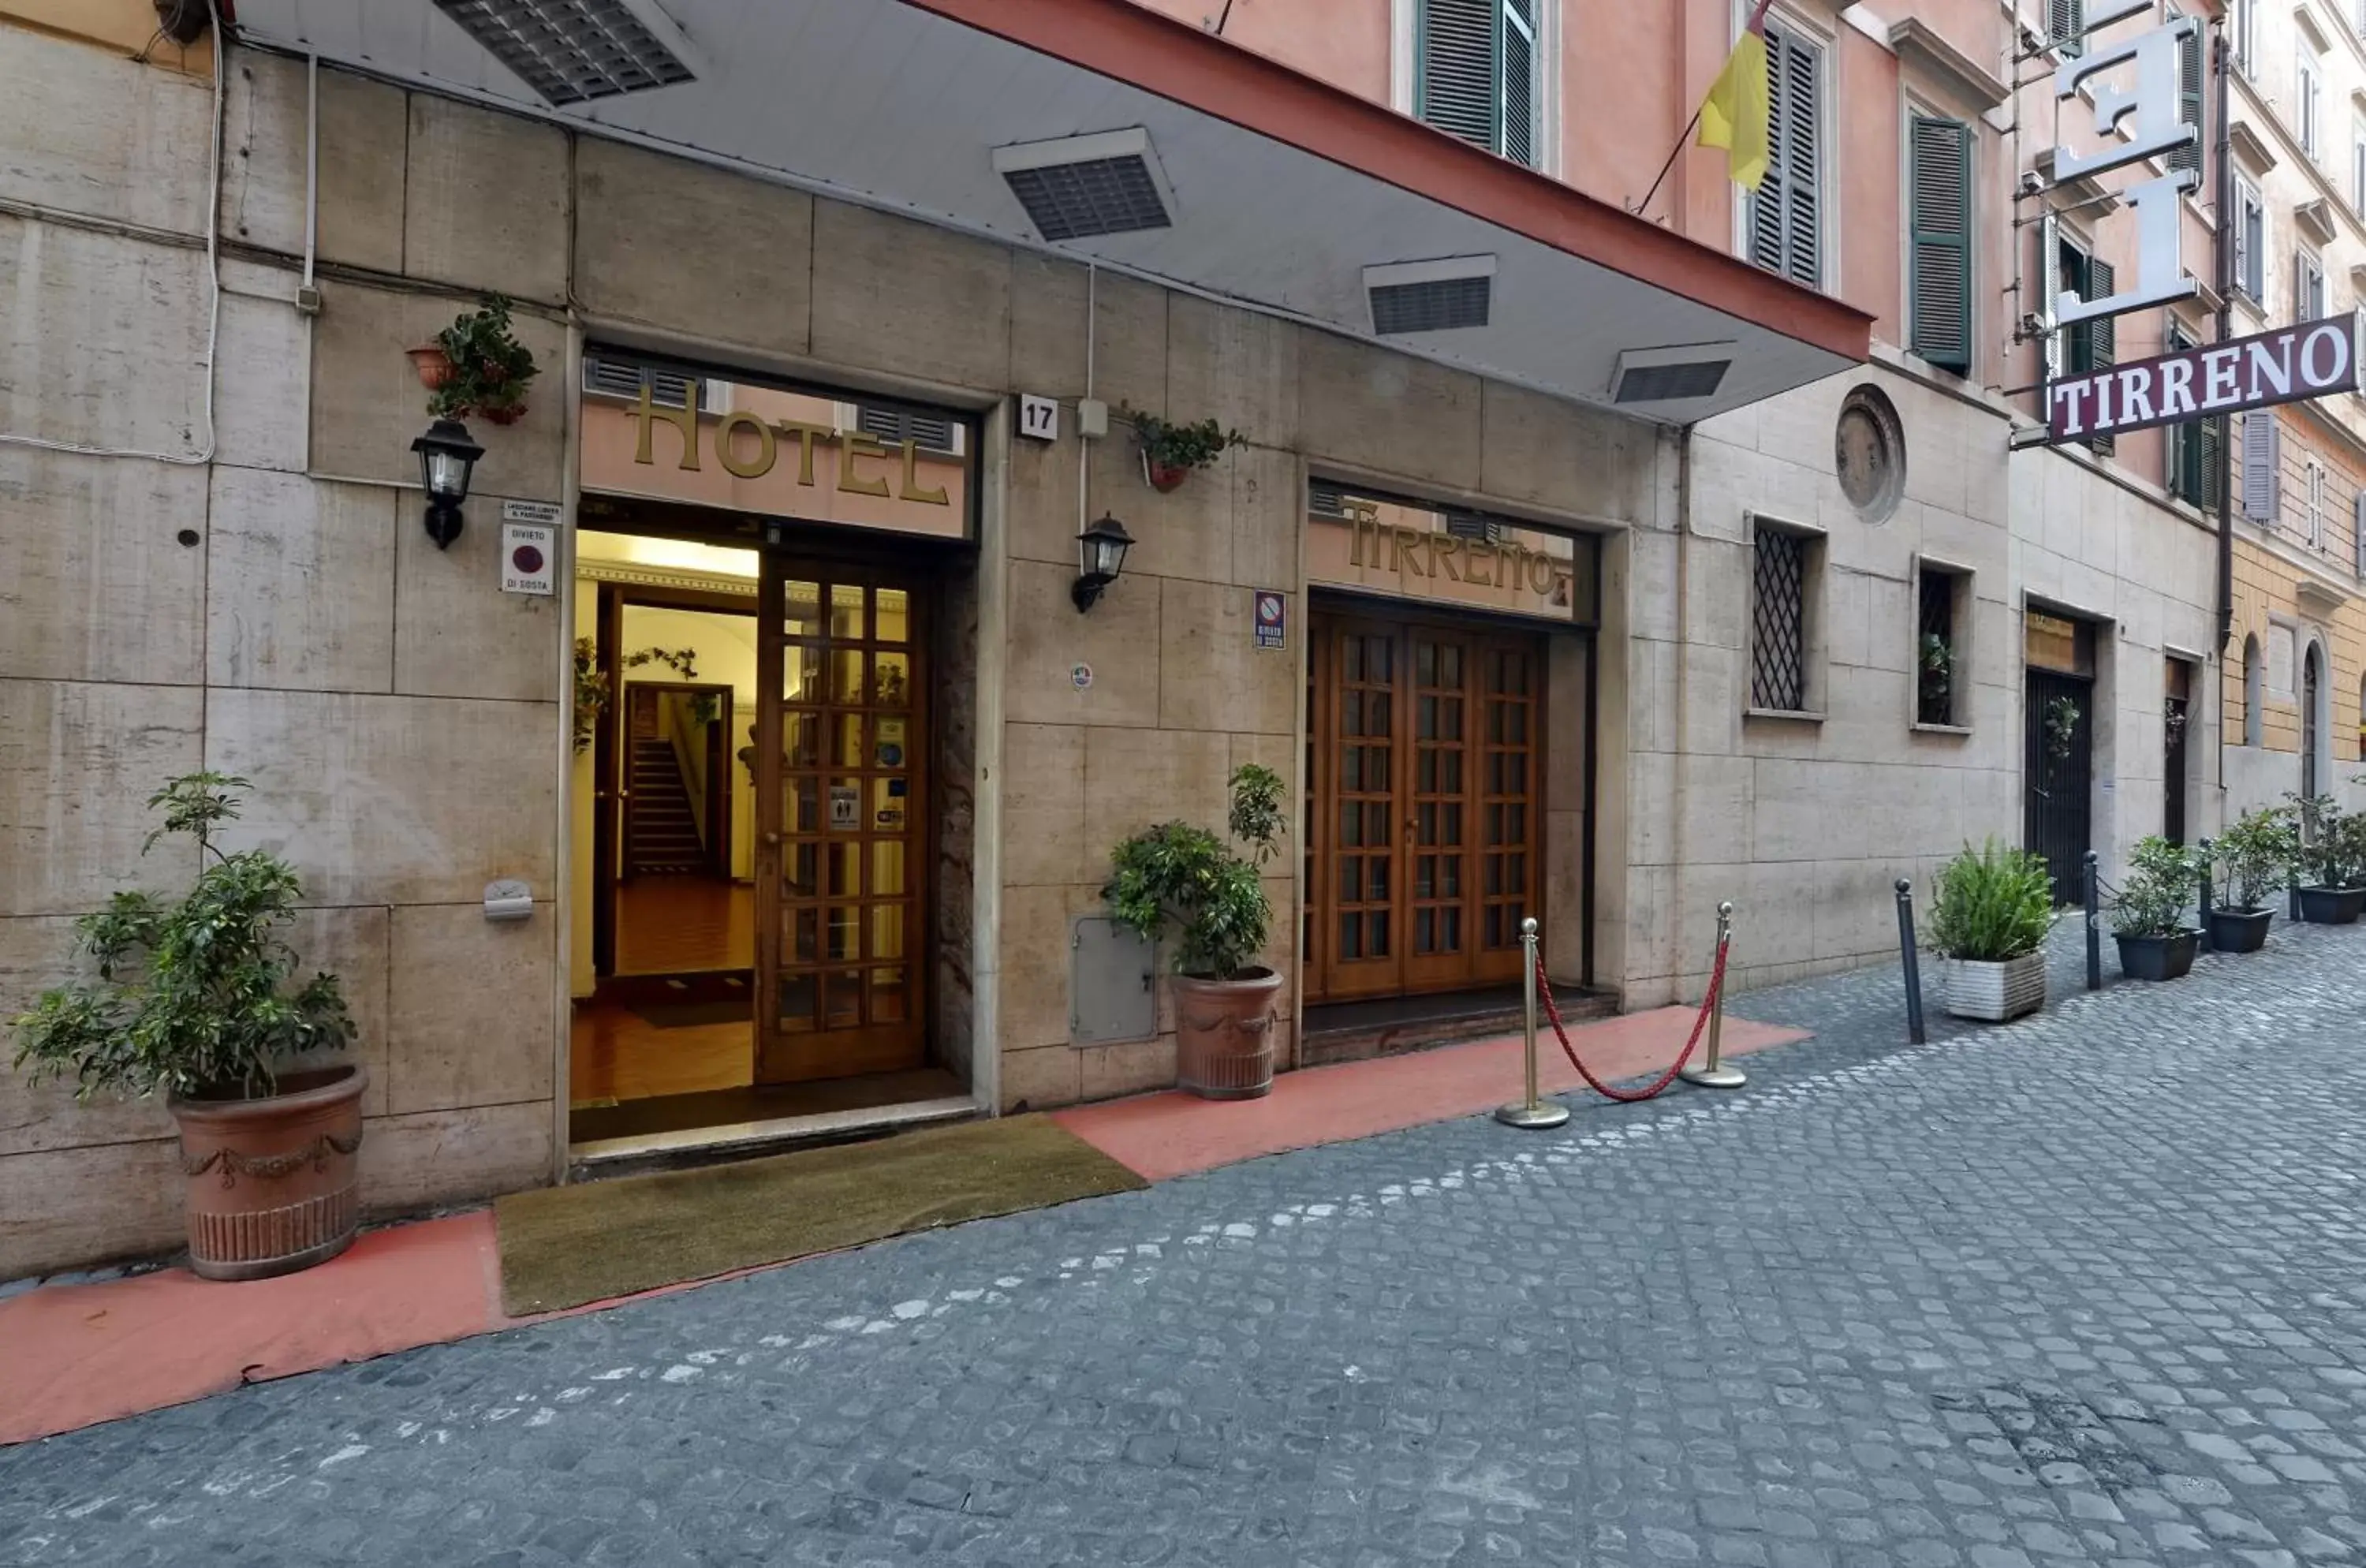 Facade/entrance in Hotel Tirreno